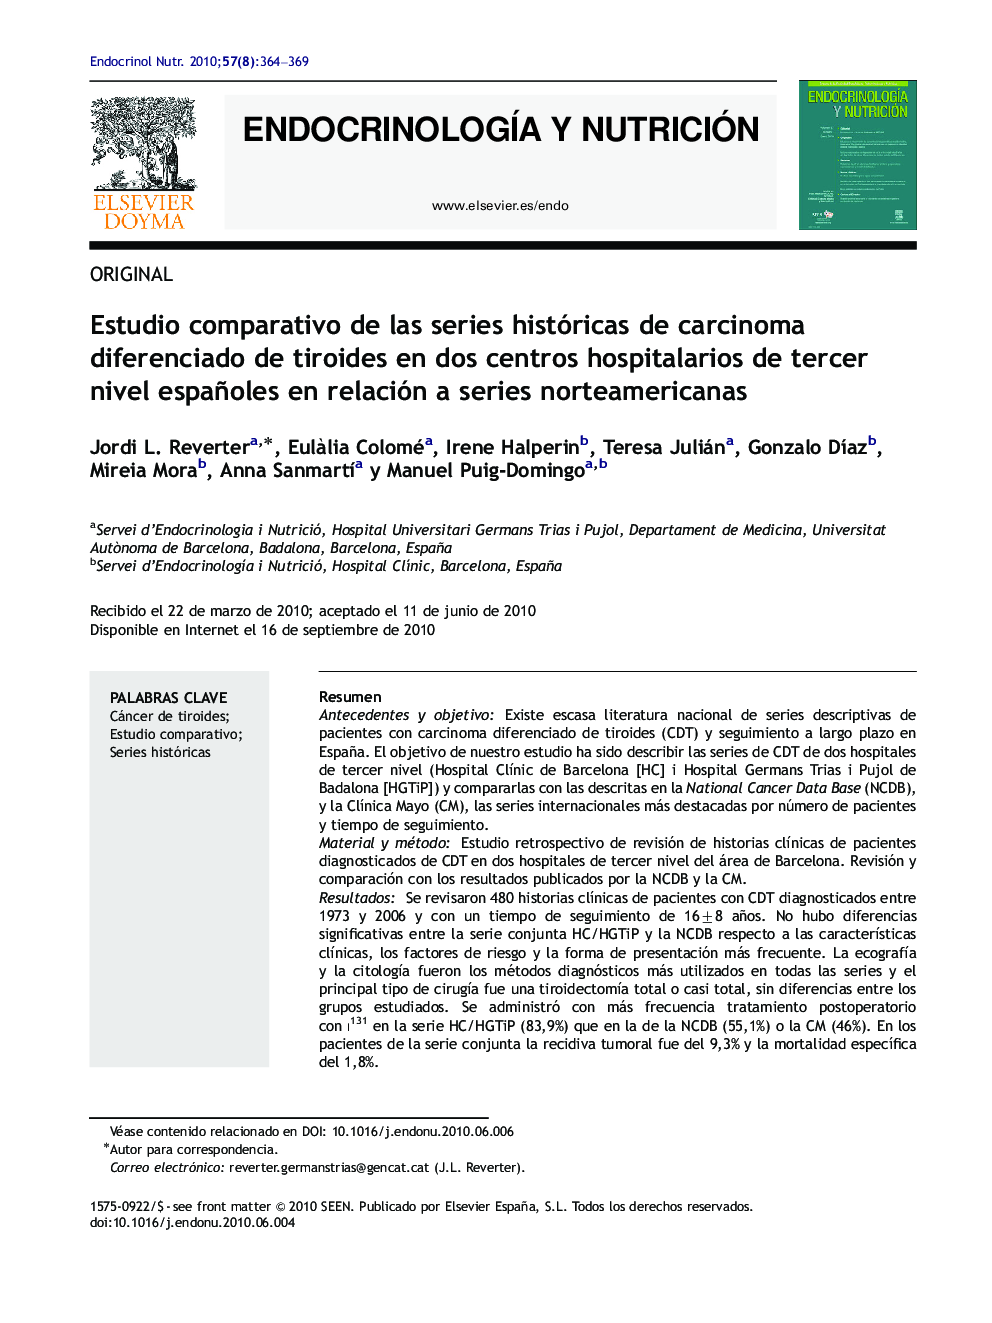 Estudio comparativo de las series históricas de carcinoma diferenciado de tiroides en dos centros hospitalarios de tercer nivel españoles en relación a series norteamericanas